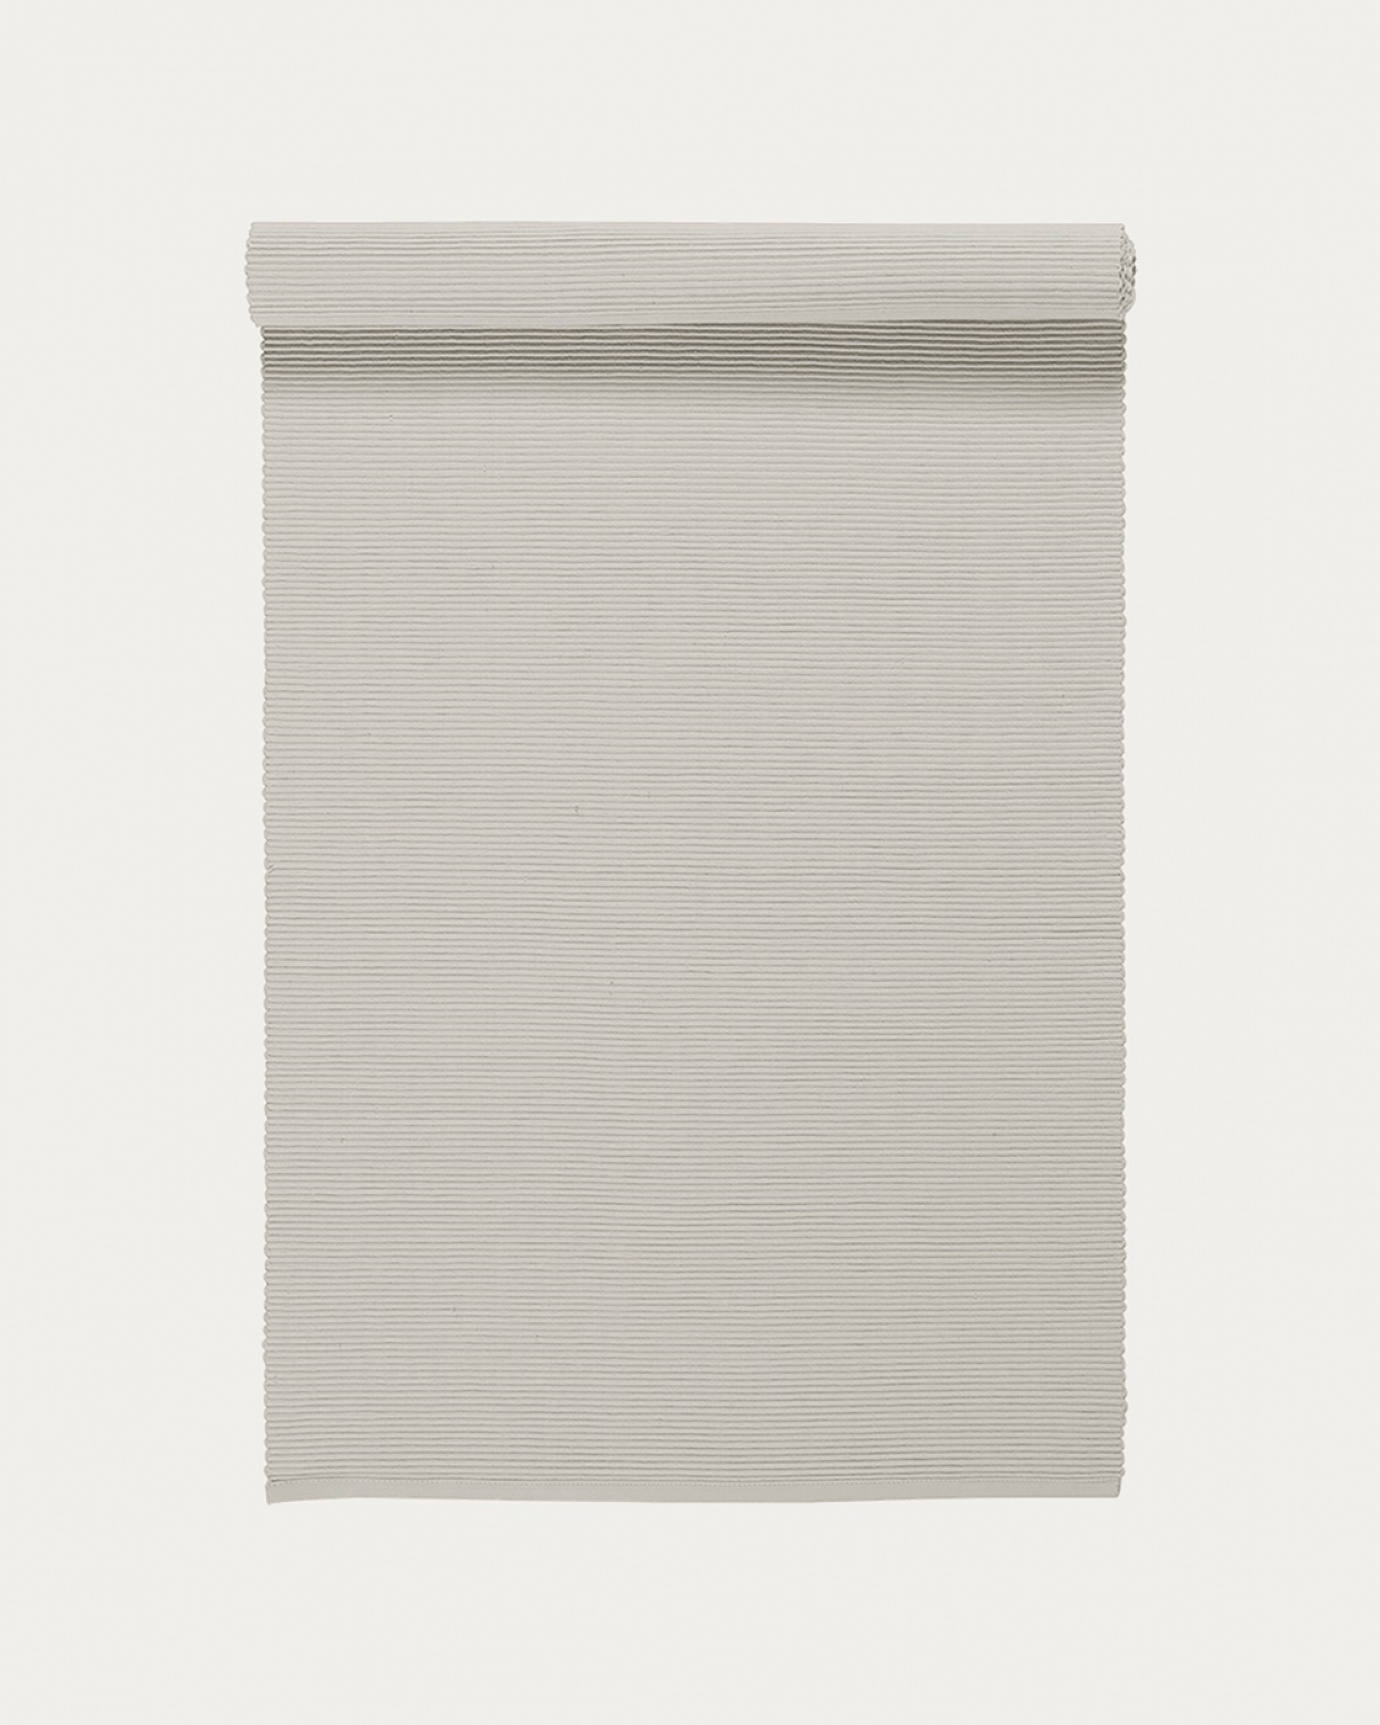 Image du produit chemin de table UNI gris perle en coton doux de qualité côtelée de LINUM DESIGN. Taille 45 x 150 cm.